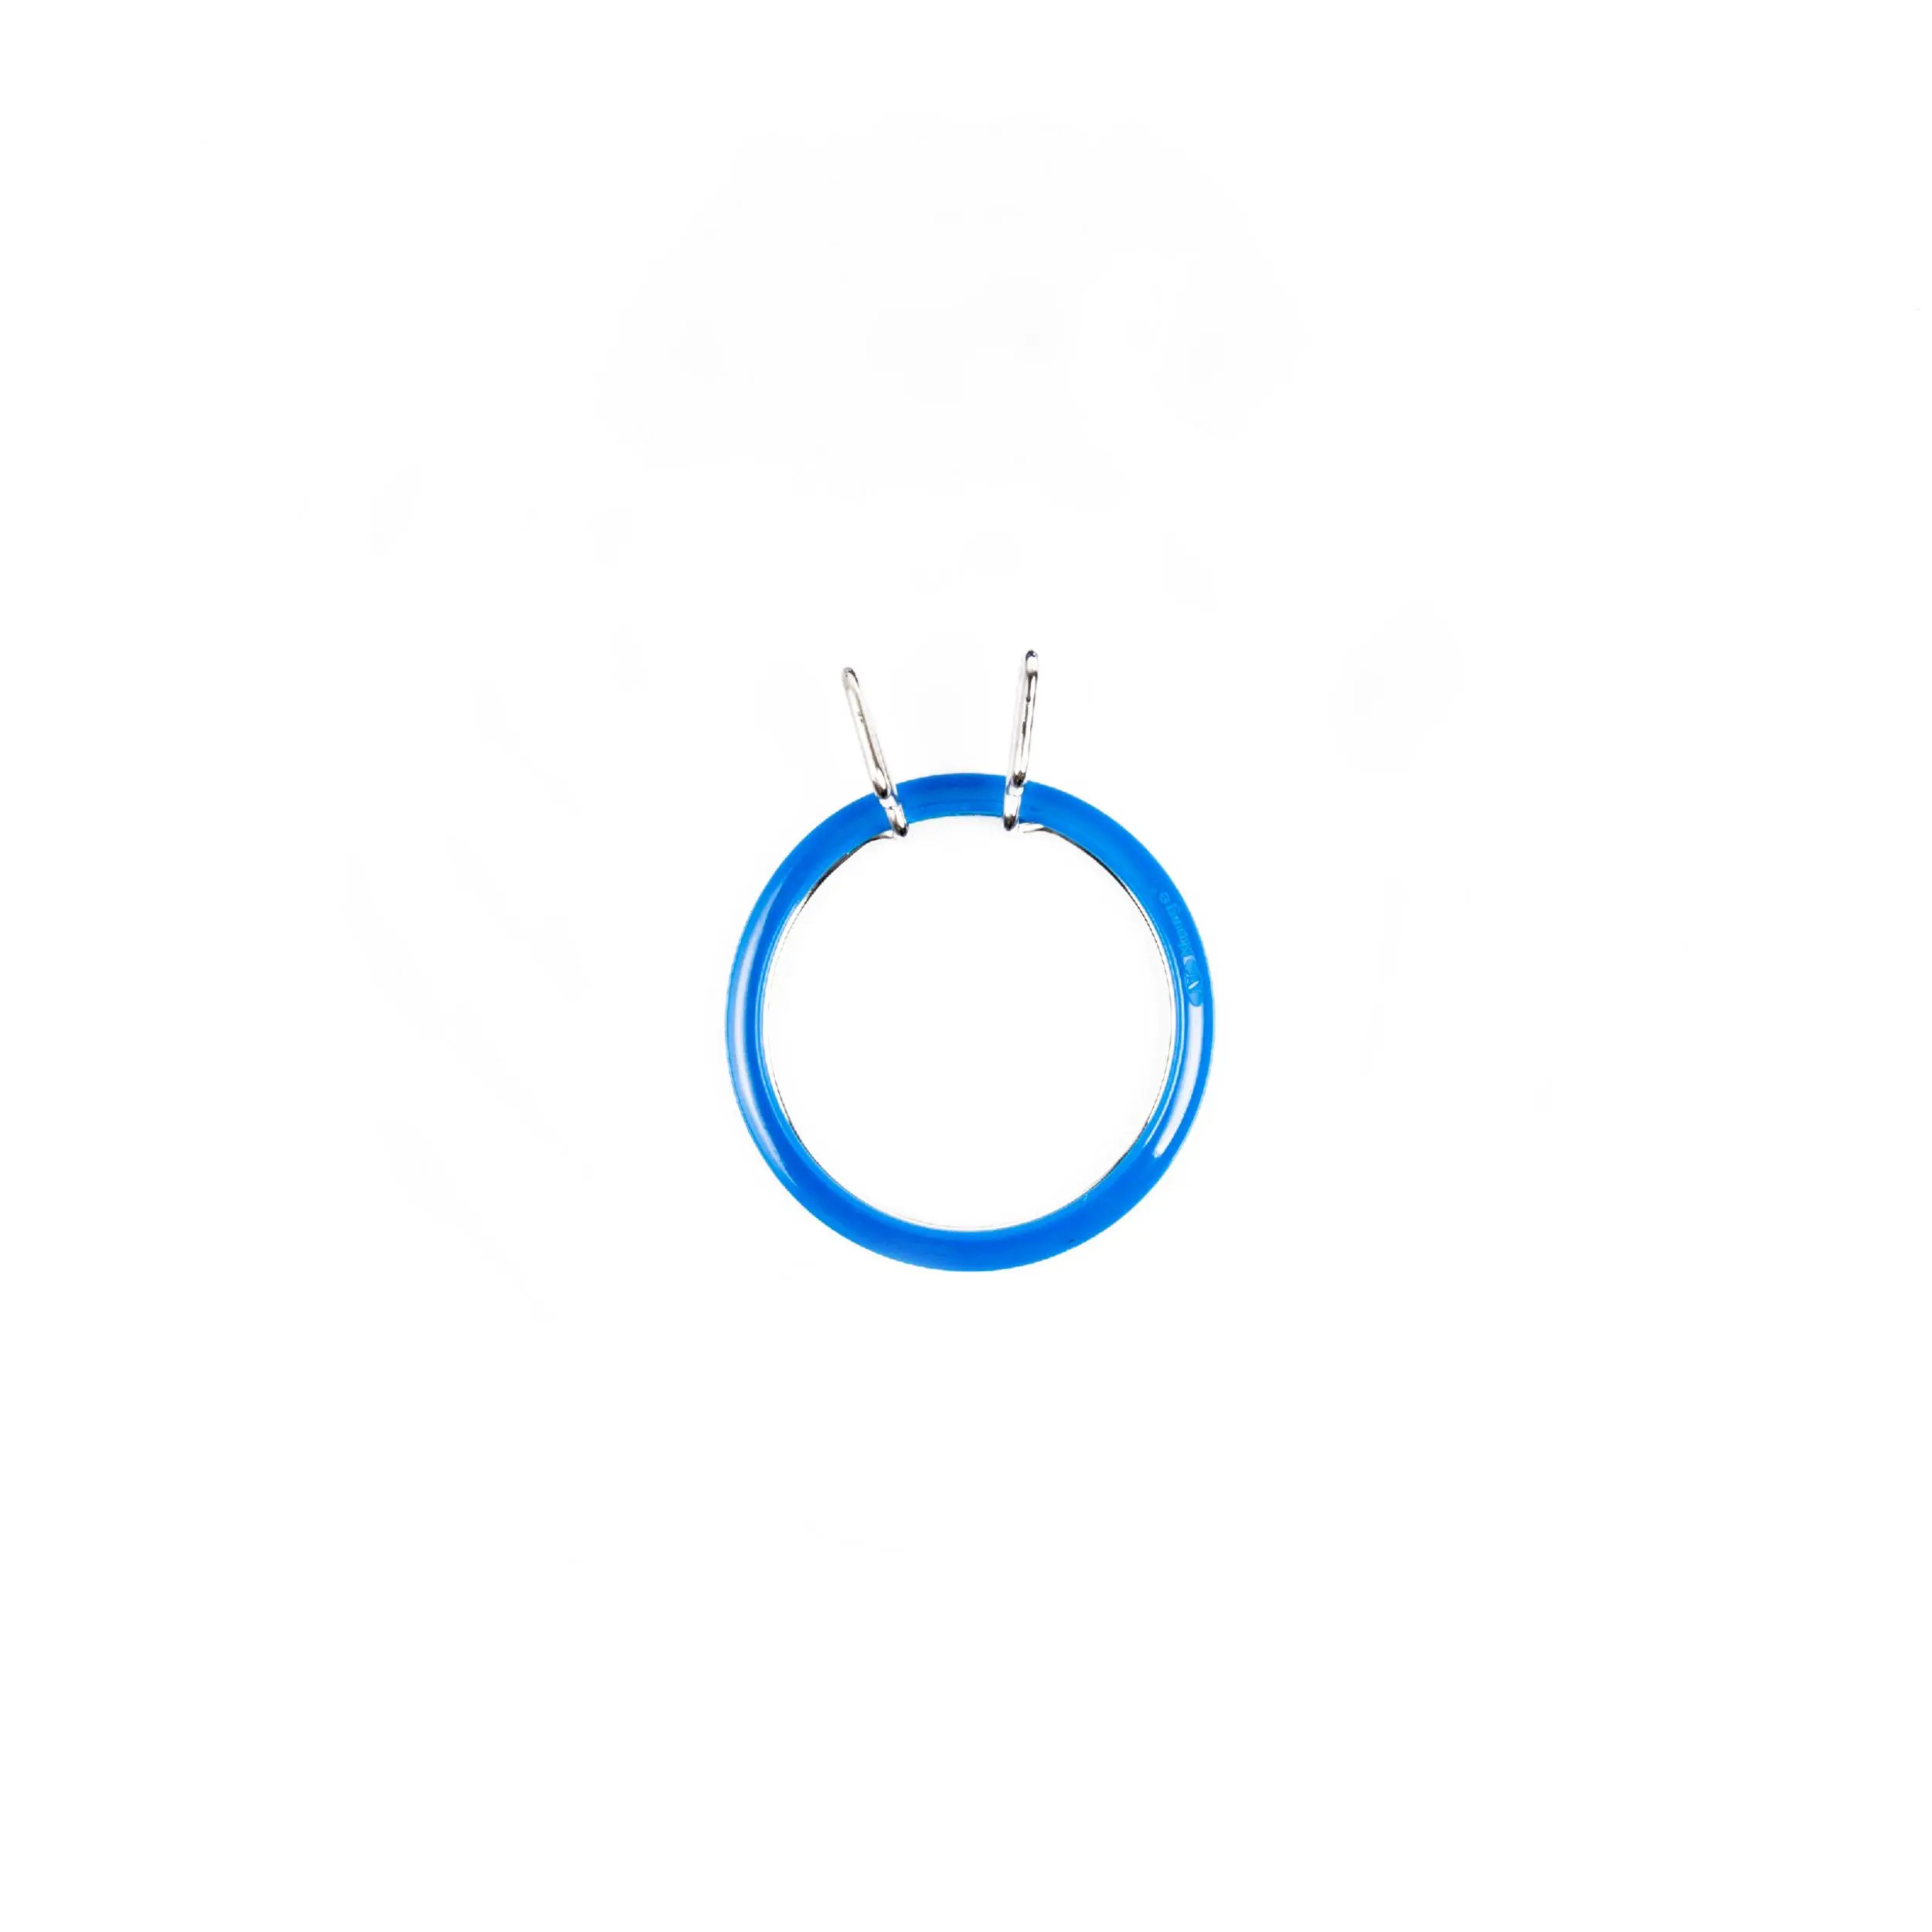 160-3/сині Пяльці Nurge пружинні для вишивання та штопки, висота обідка 2,6мм, діаметр 58мм